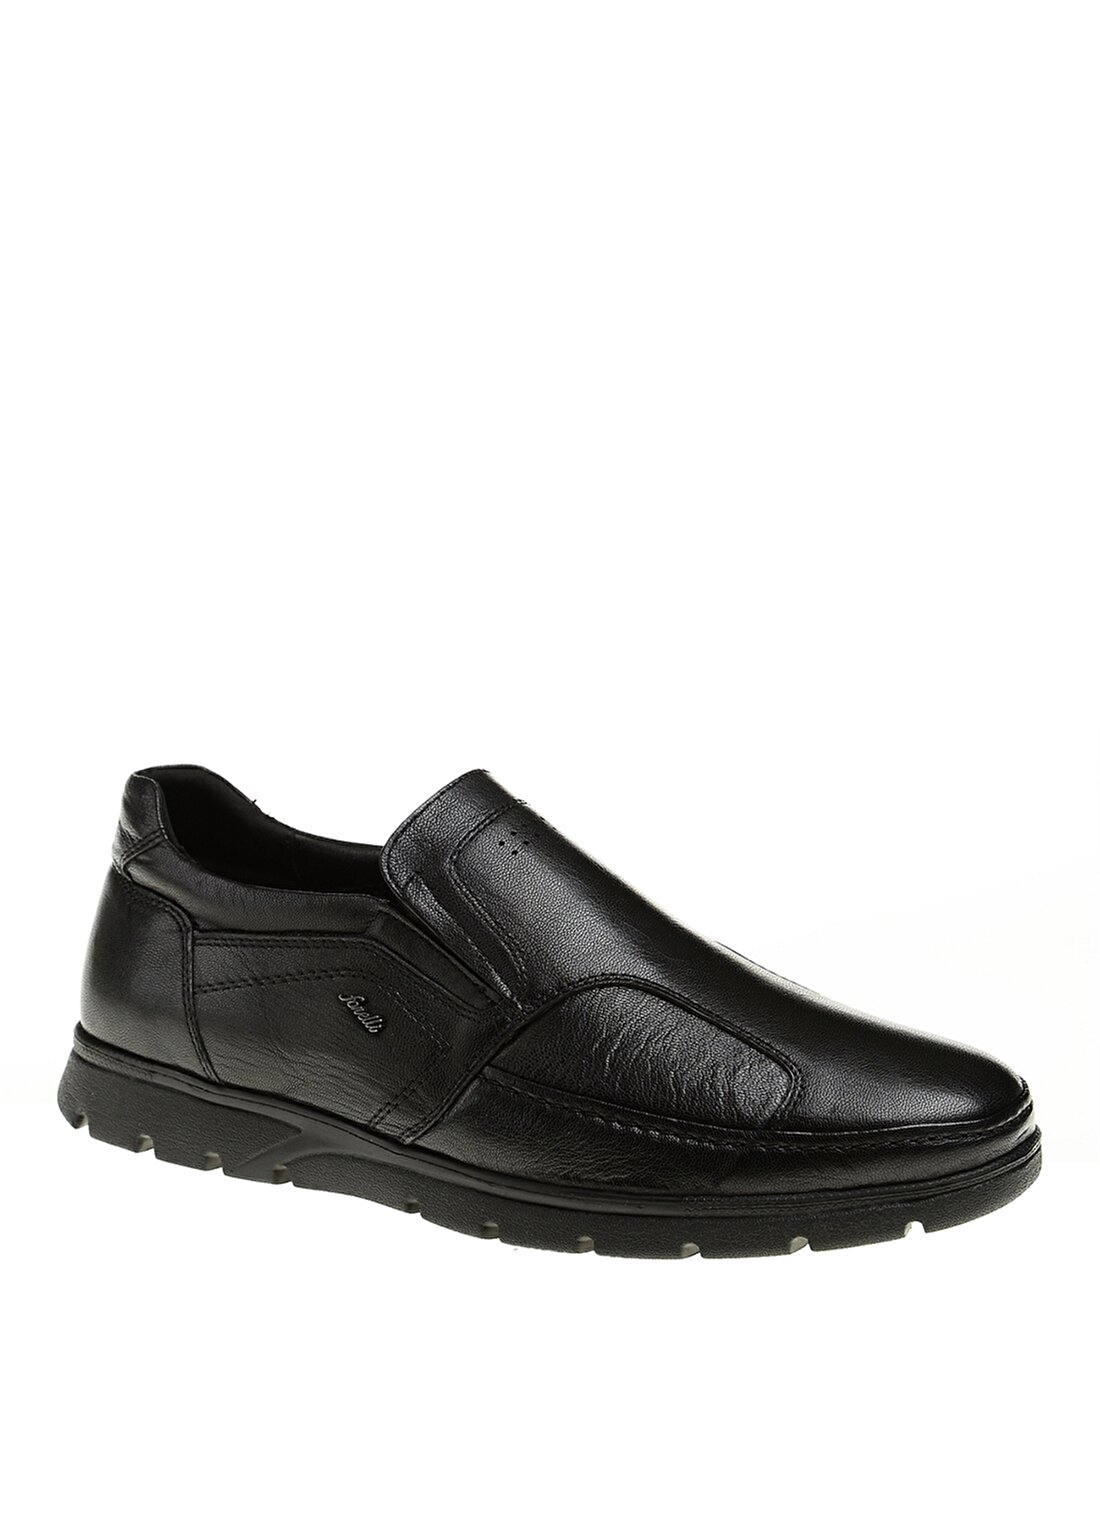 Forelli 32606-H Düz Topuk Kauçuk Taban Siyah Erkek Günlük Ayakkabı